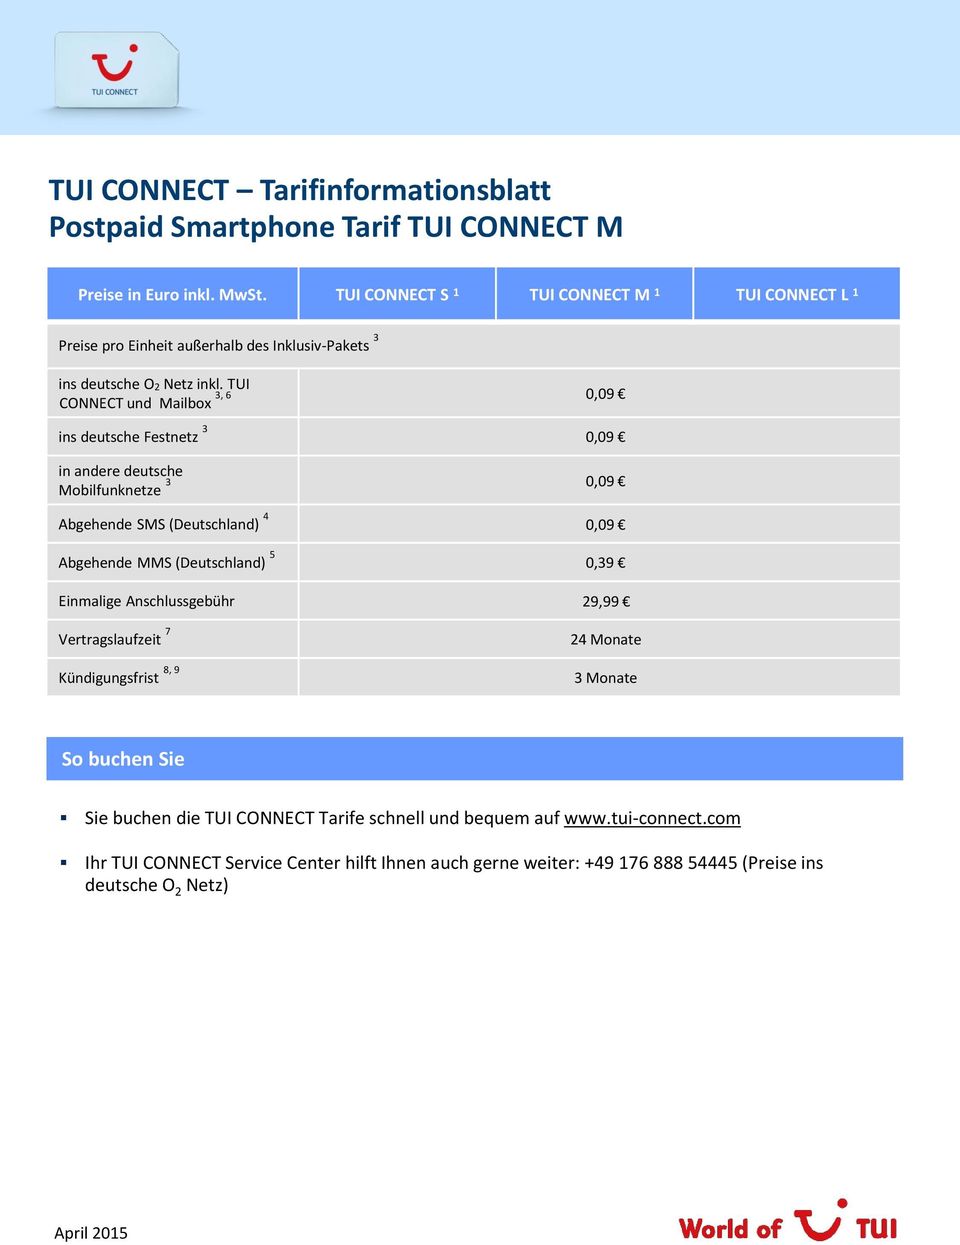 TUI 3, 6 0,09 CONNECT und Mailbox ins deutsche Festnetz 3 0,09 in andere deutsche Mobilfunknetze 3 0,09 Abgehende SMS (Deutschland) 4 0,09 Abgehende MMS